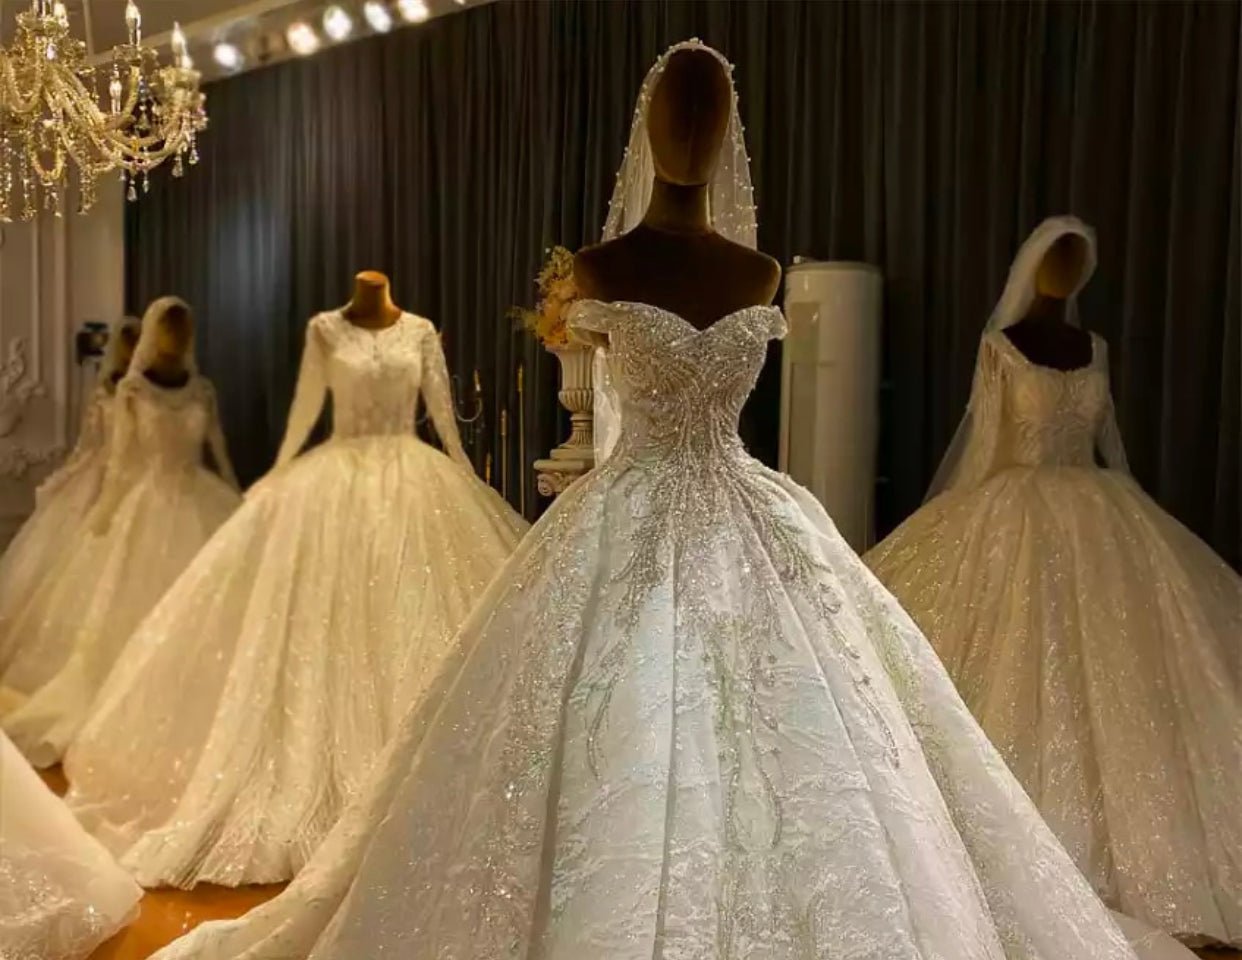 Luxury Off Shoulder Beading Wedding Dress - Mscooco.co.uk